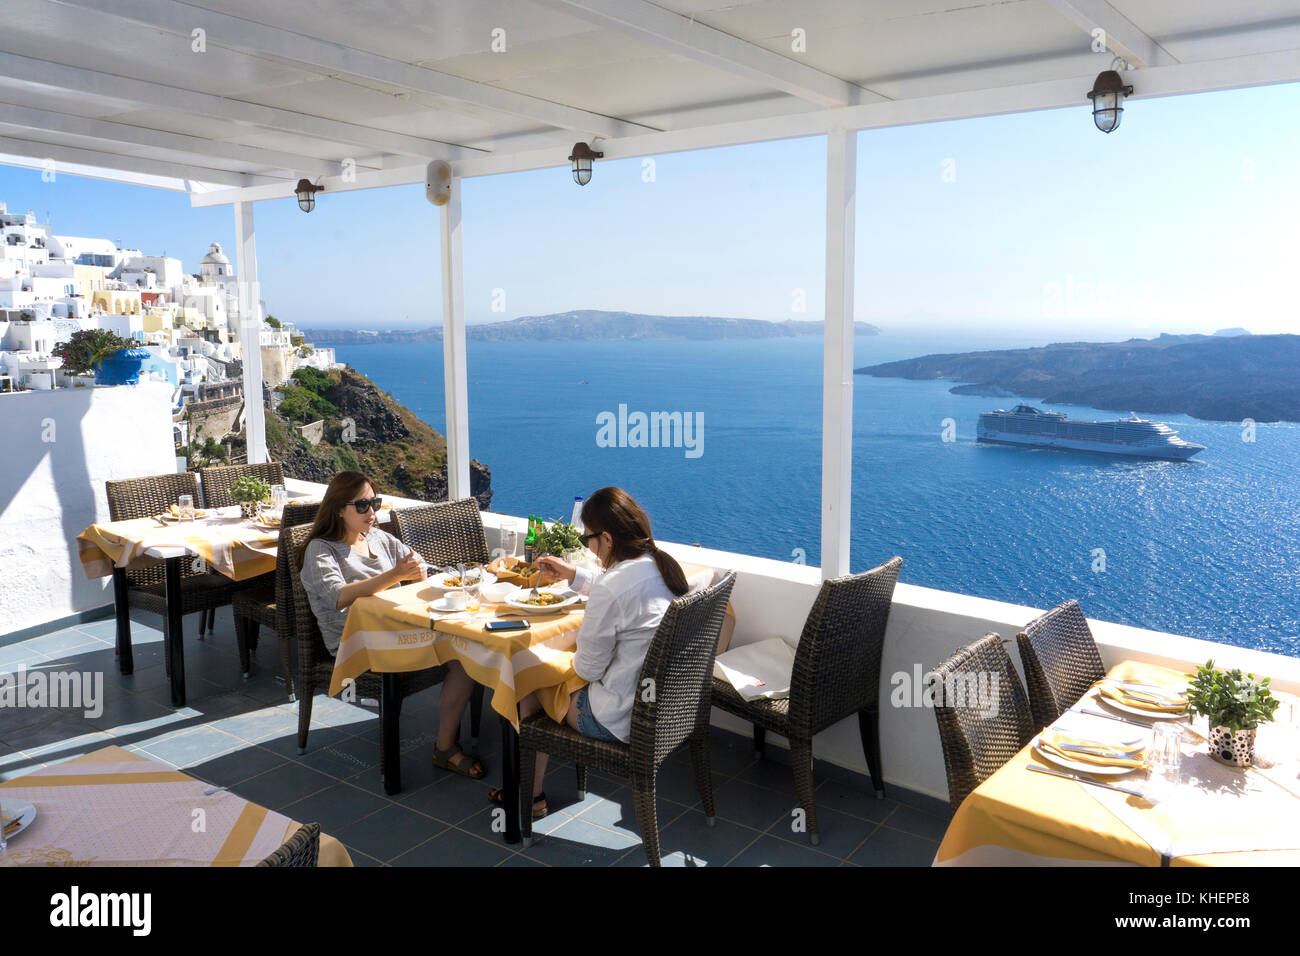 Restaurant avec vue sur la mer au bord du cratère, Thira, l'île de Santorin, Cyclades, Mer Égée, Grèce Banque D'Images